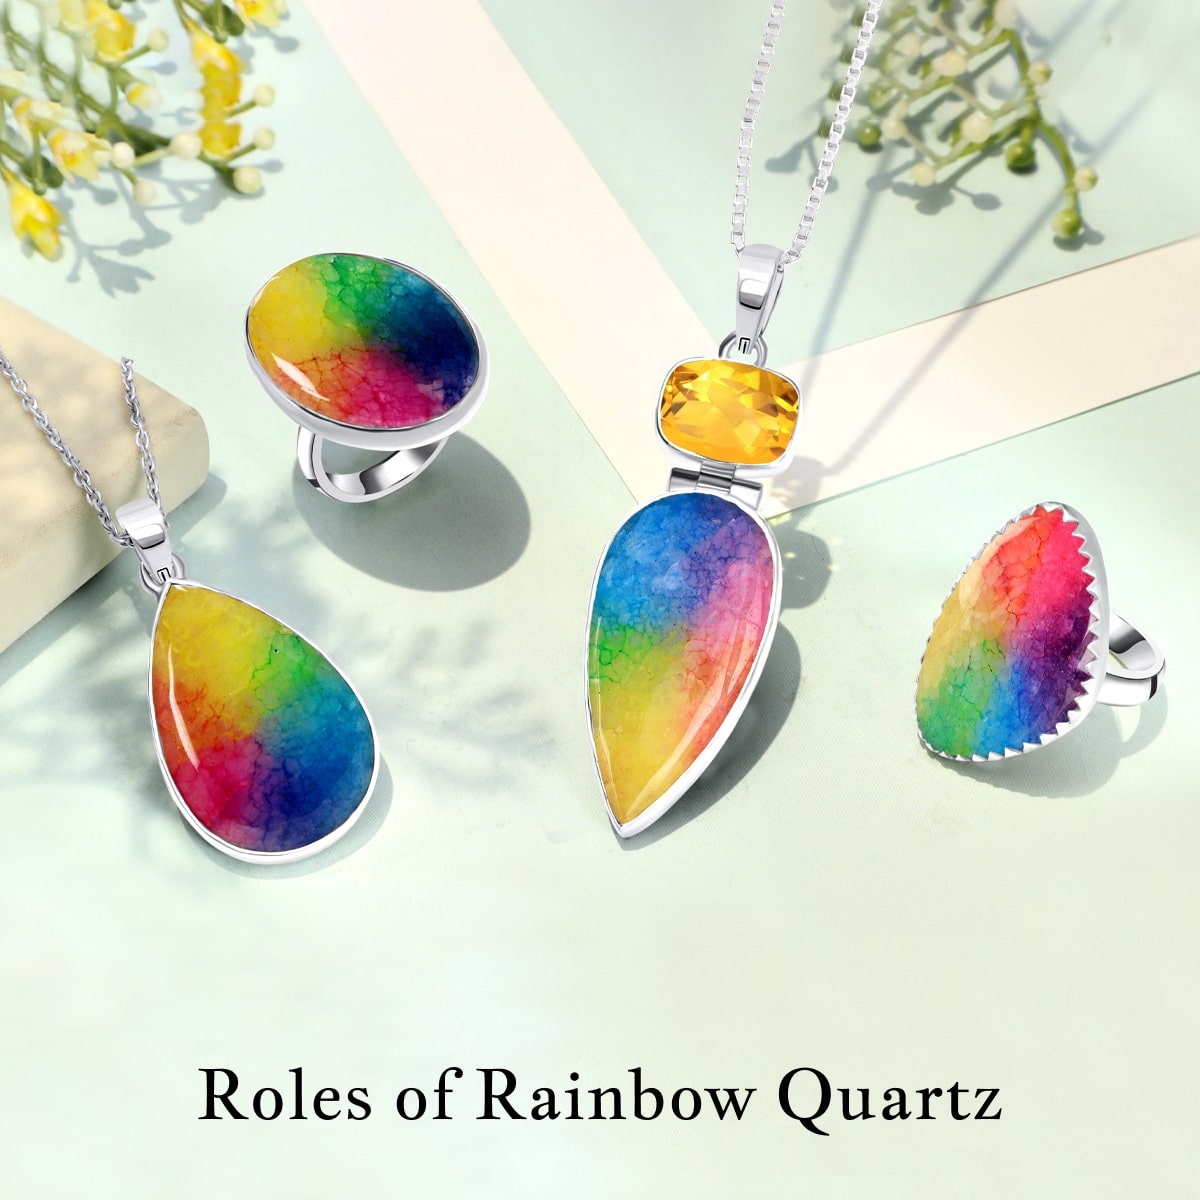 Purpose of Rainbow Quartz